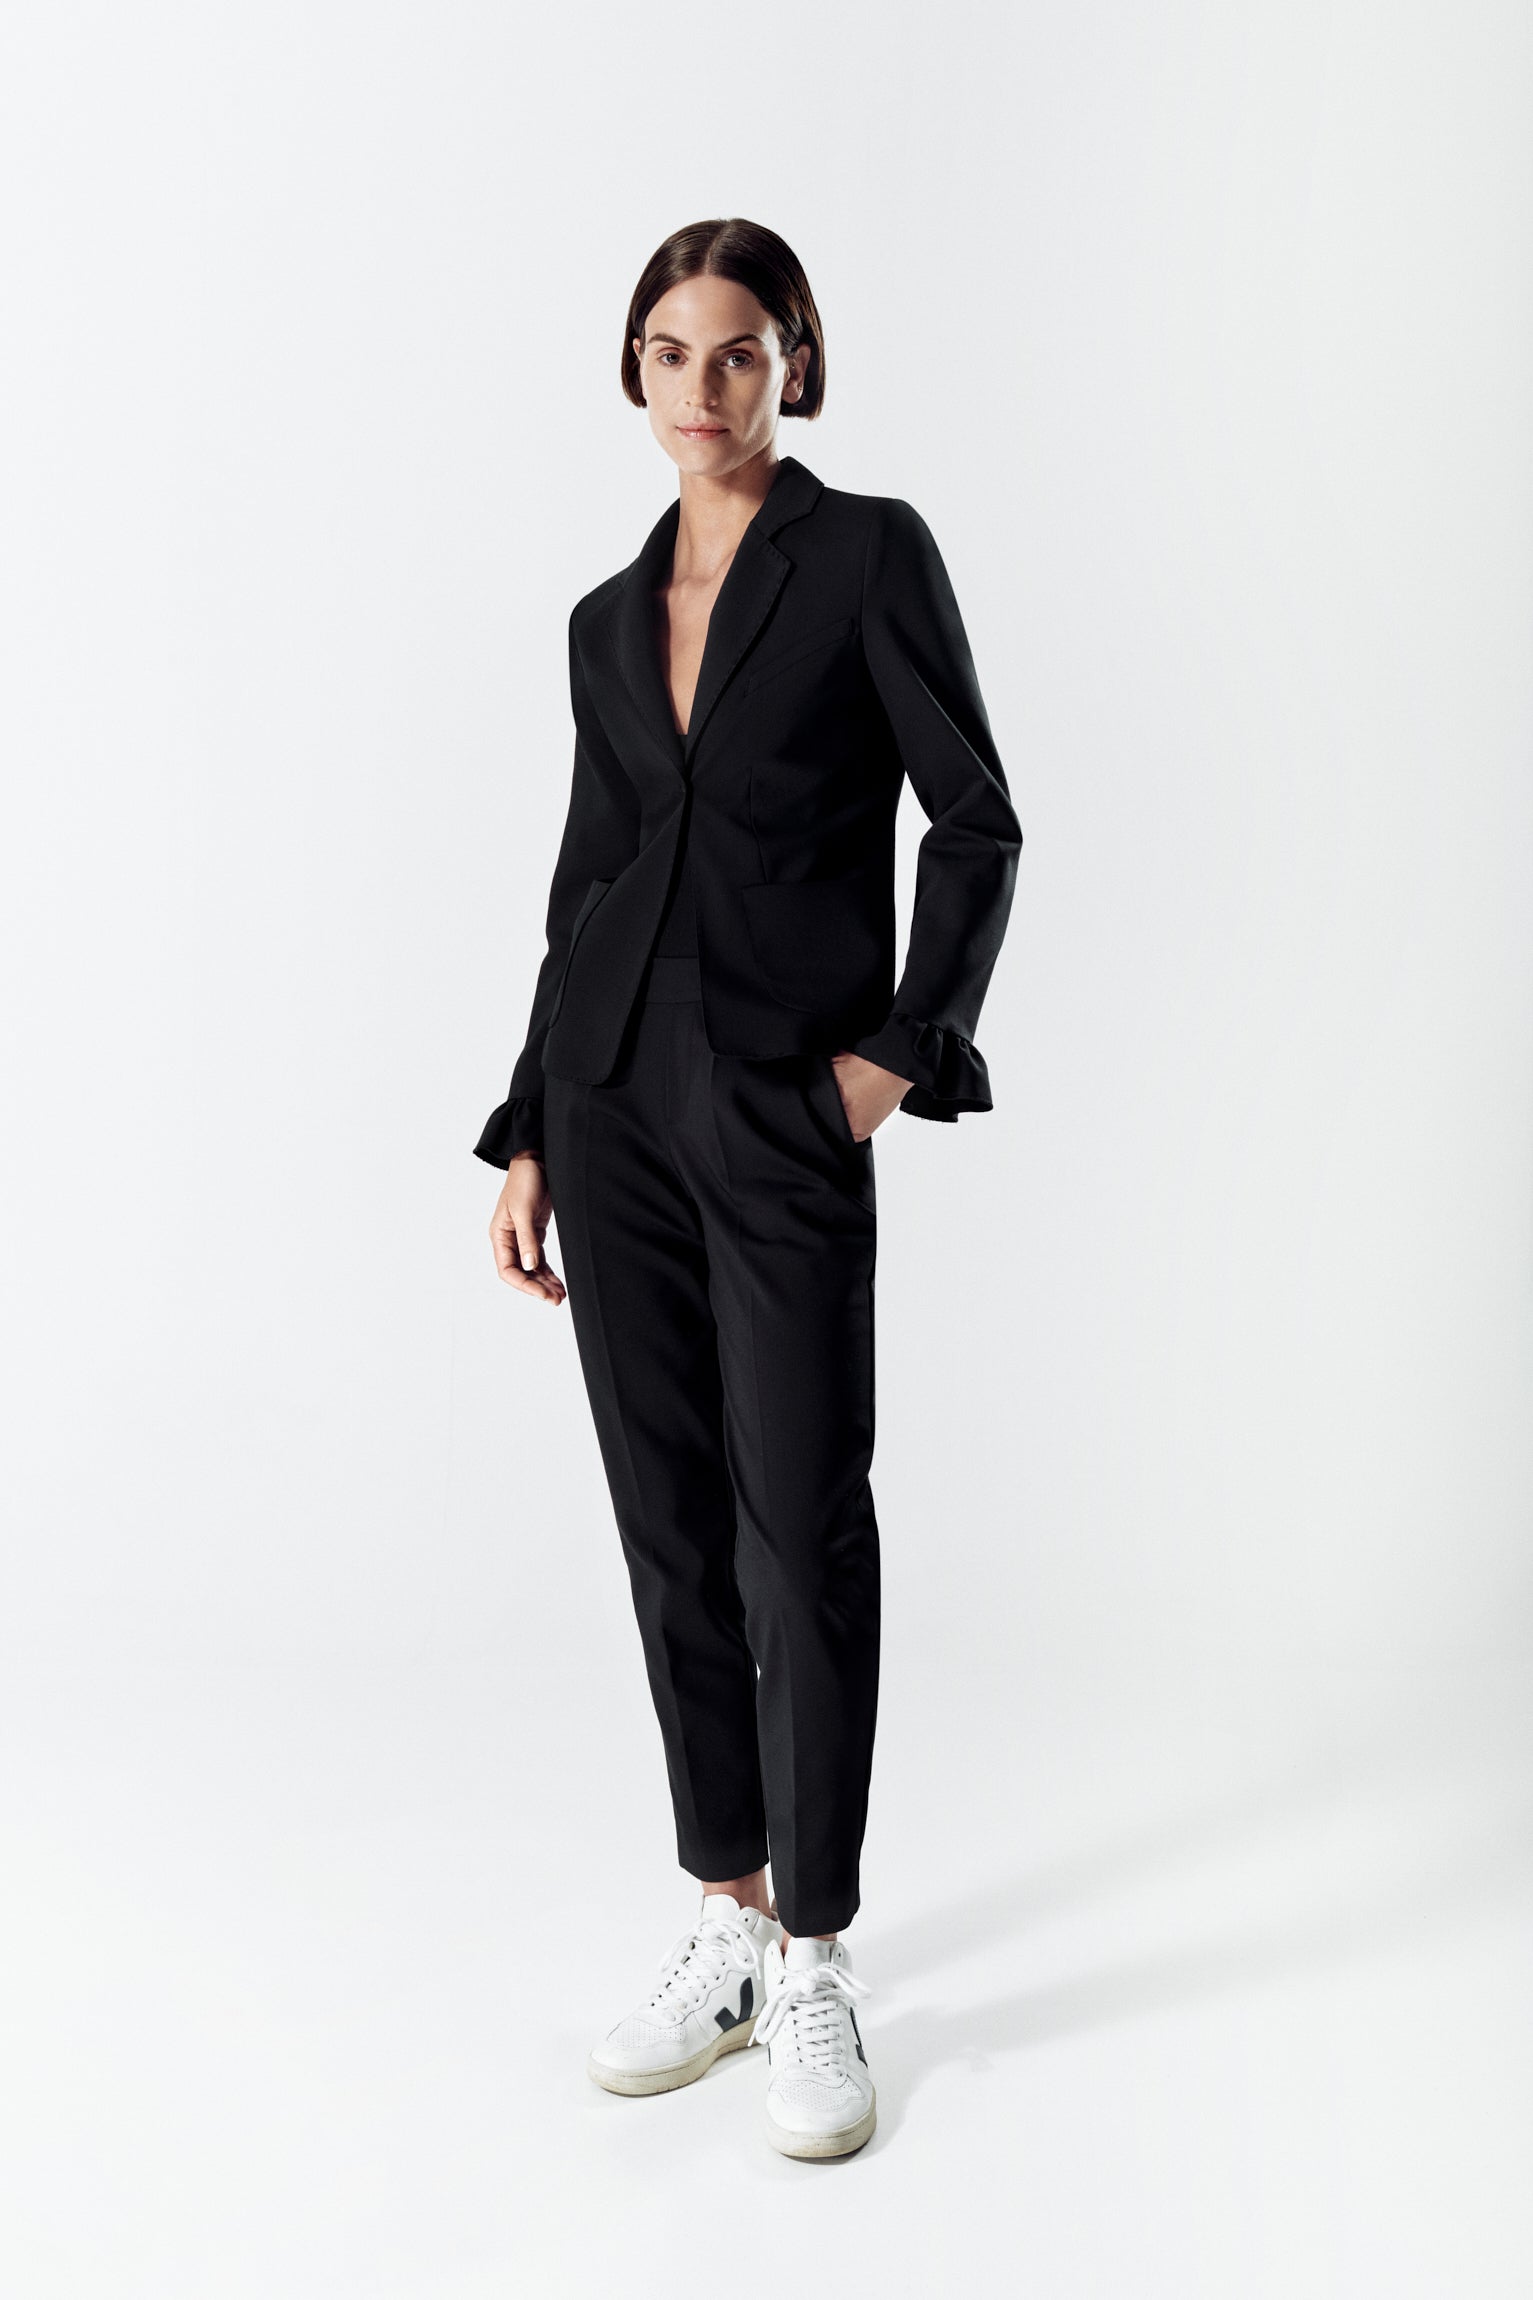 Lee-Ann BLACK Suit